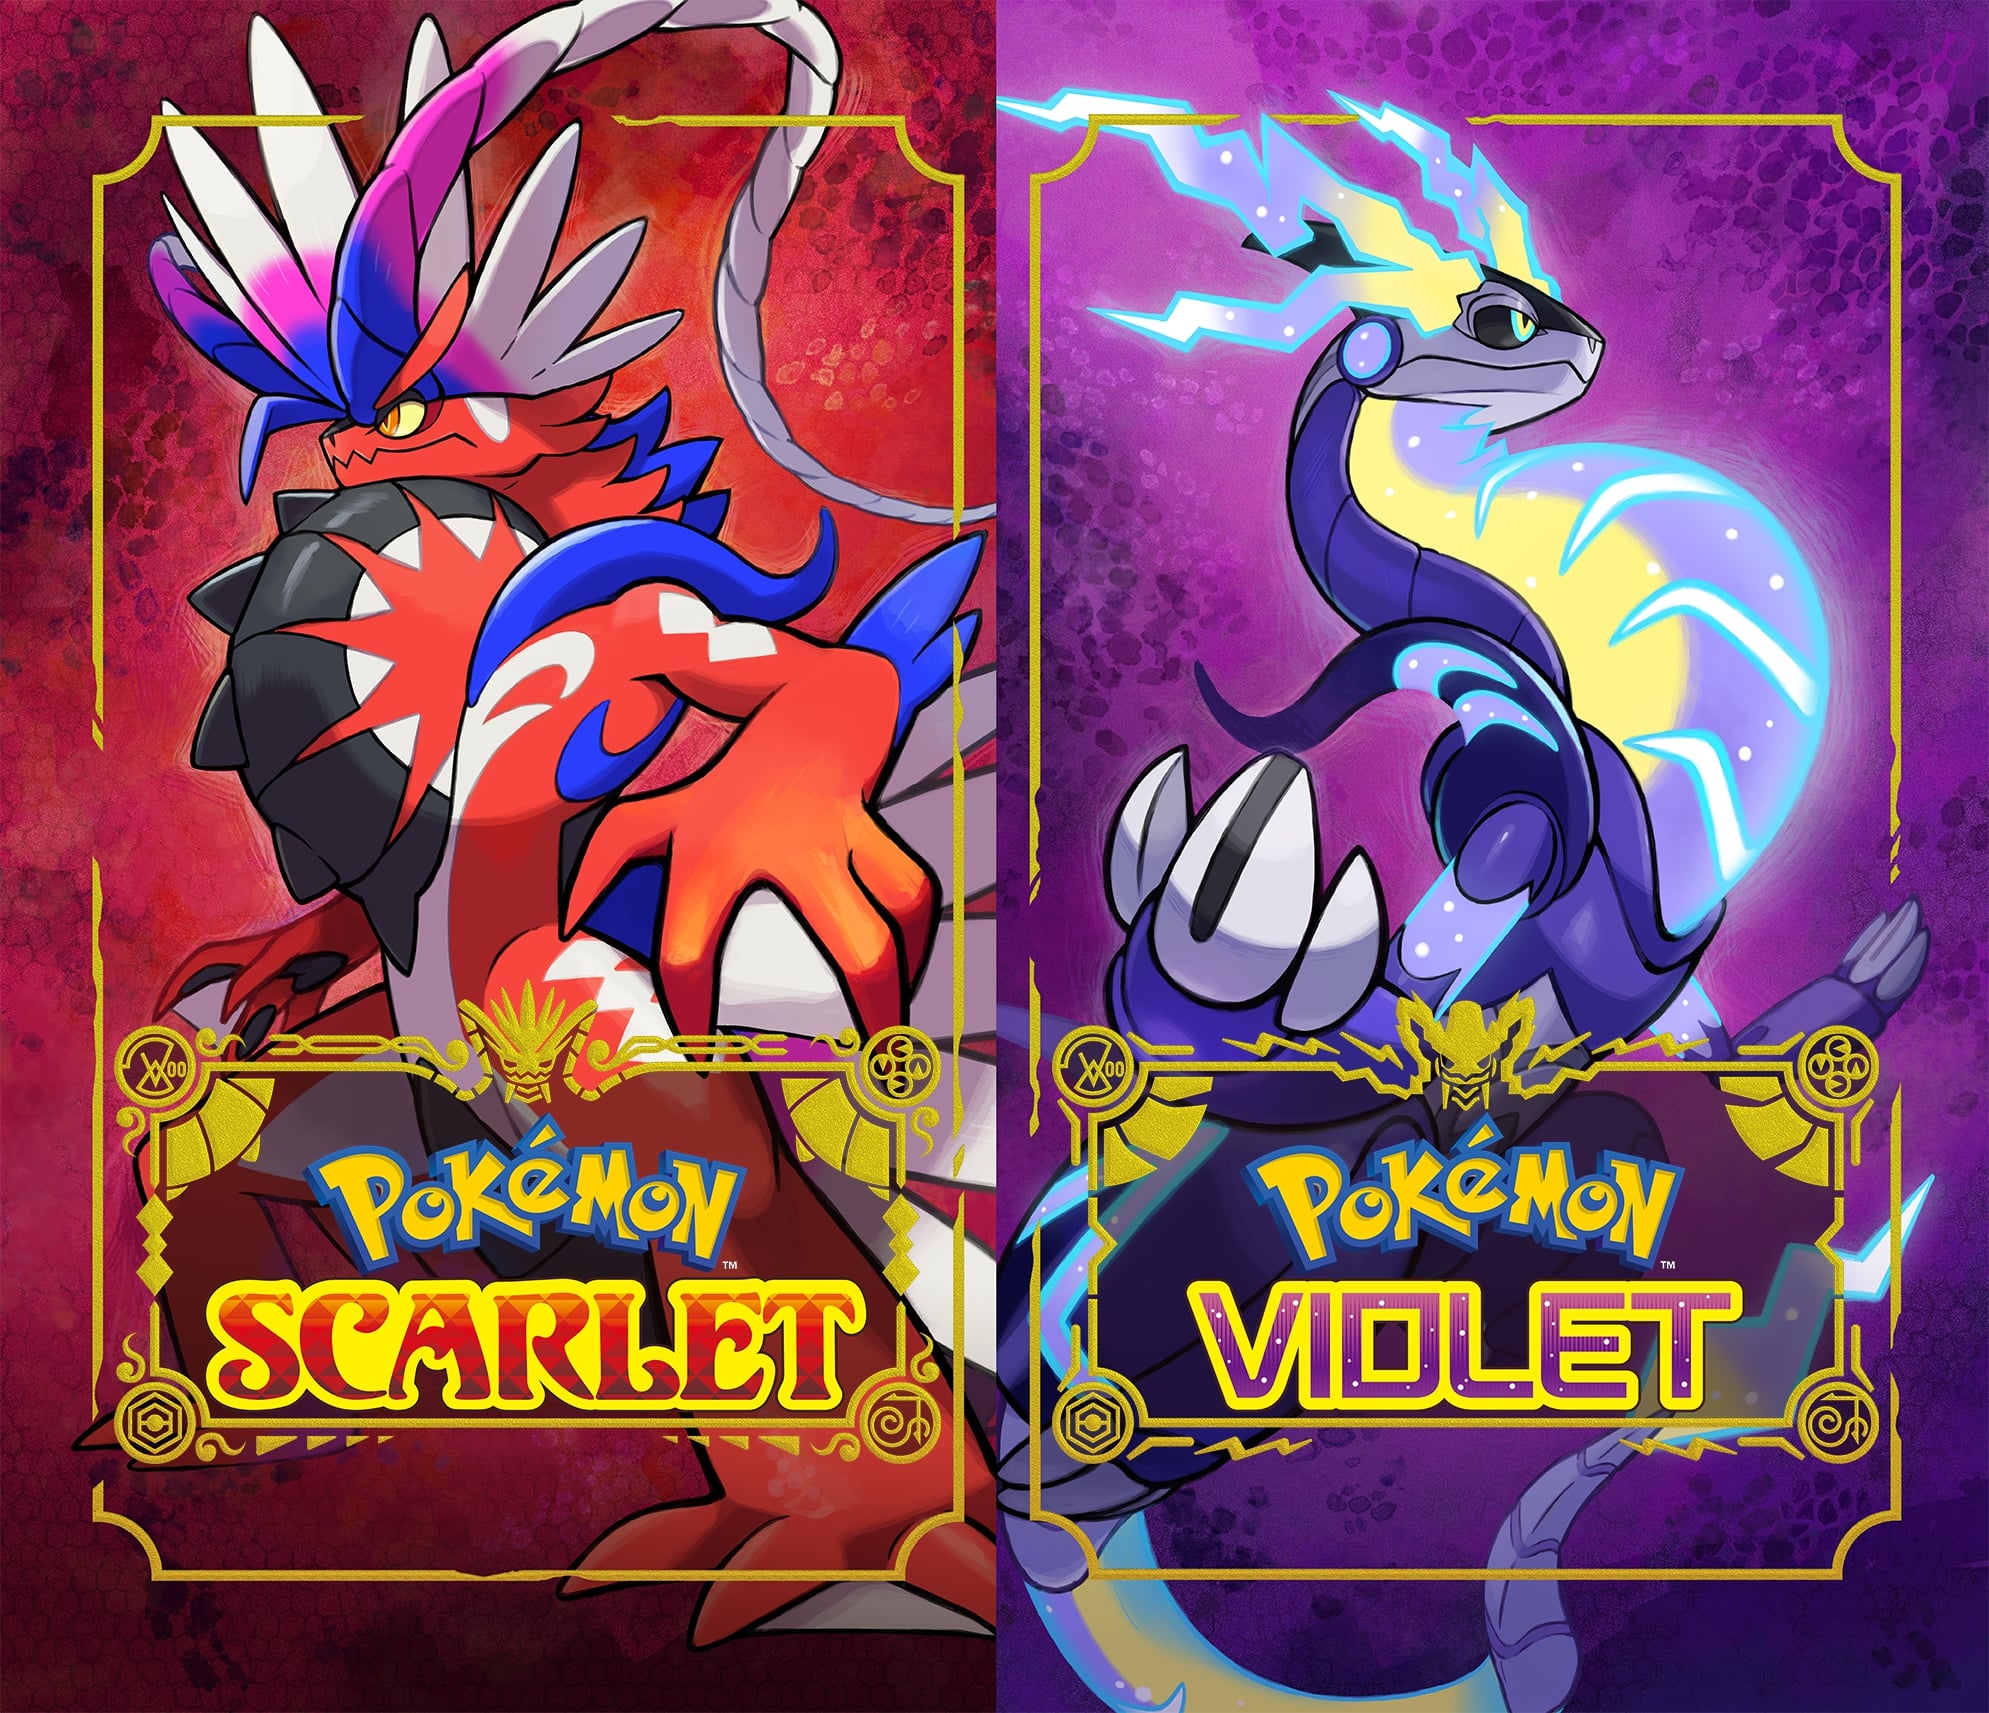 Die Box-Art für die beiden Pokémon Scarlet und Violet nebeneinander.